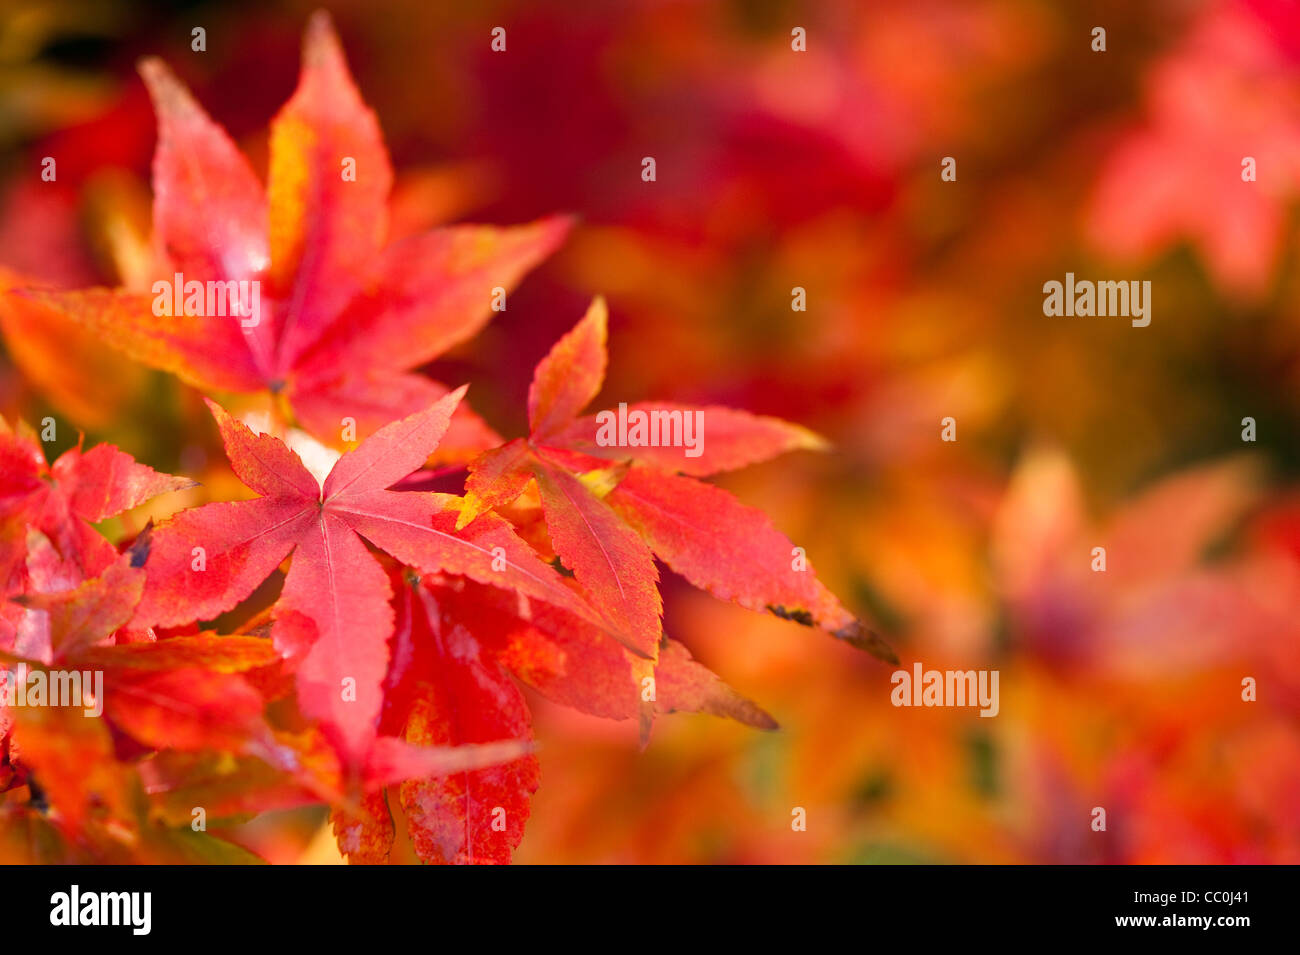 Acer pubipalmatum, Maple, in autumn Stock Photo